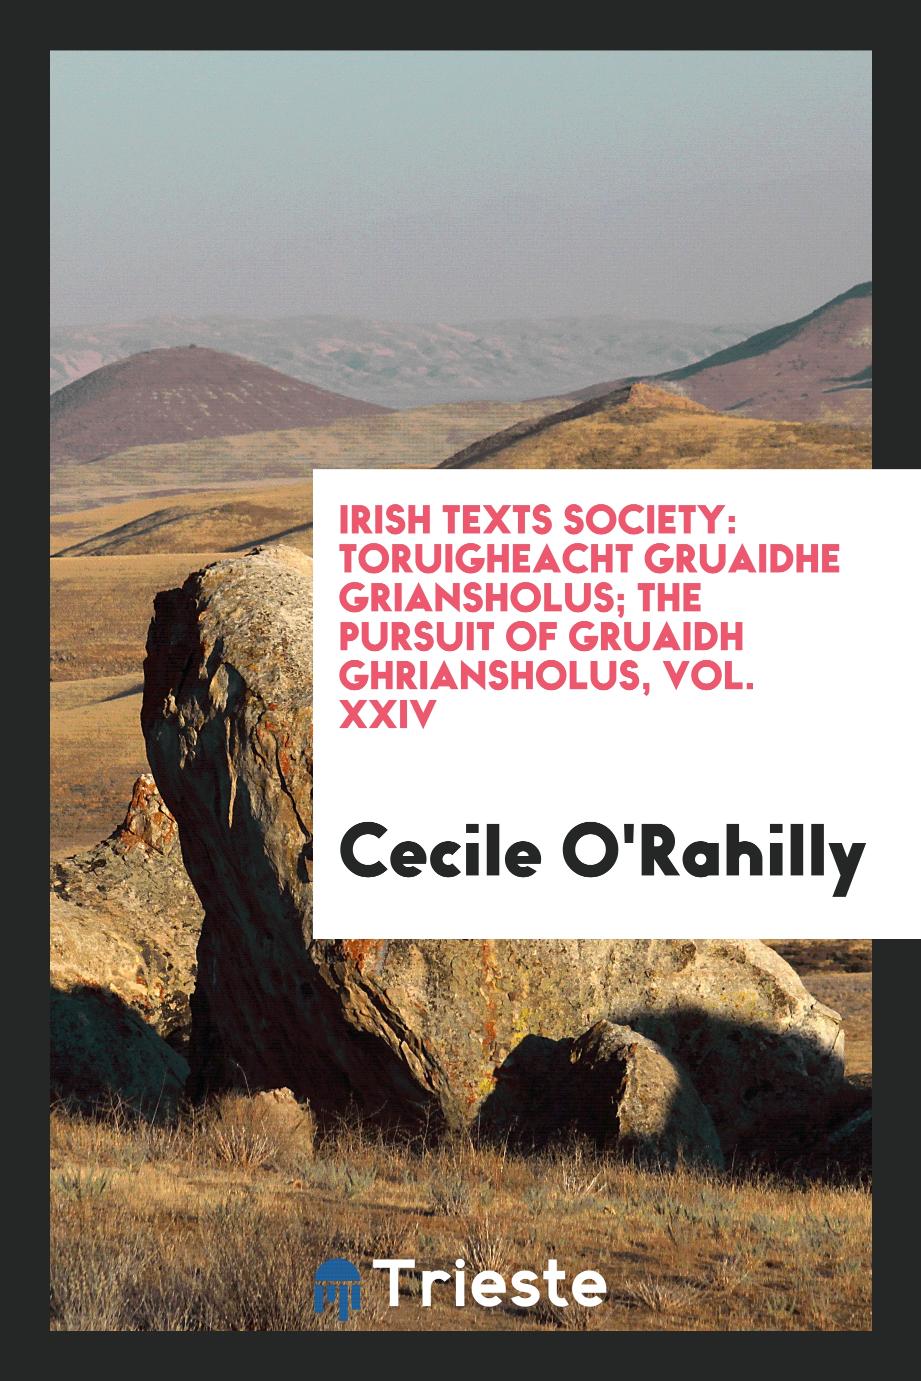 Irish Texts Society: Toruigheacht gruaidhe griansholus; The pursuit of gruaidh ghriansholus, Vol. XXIV